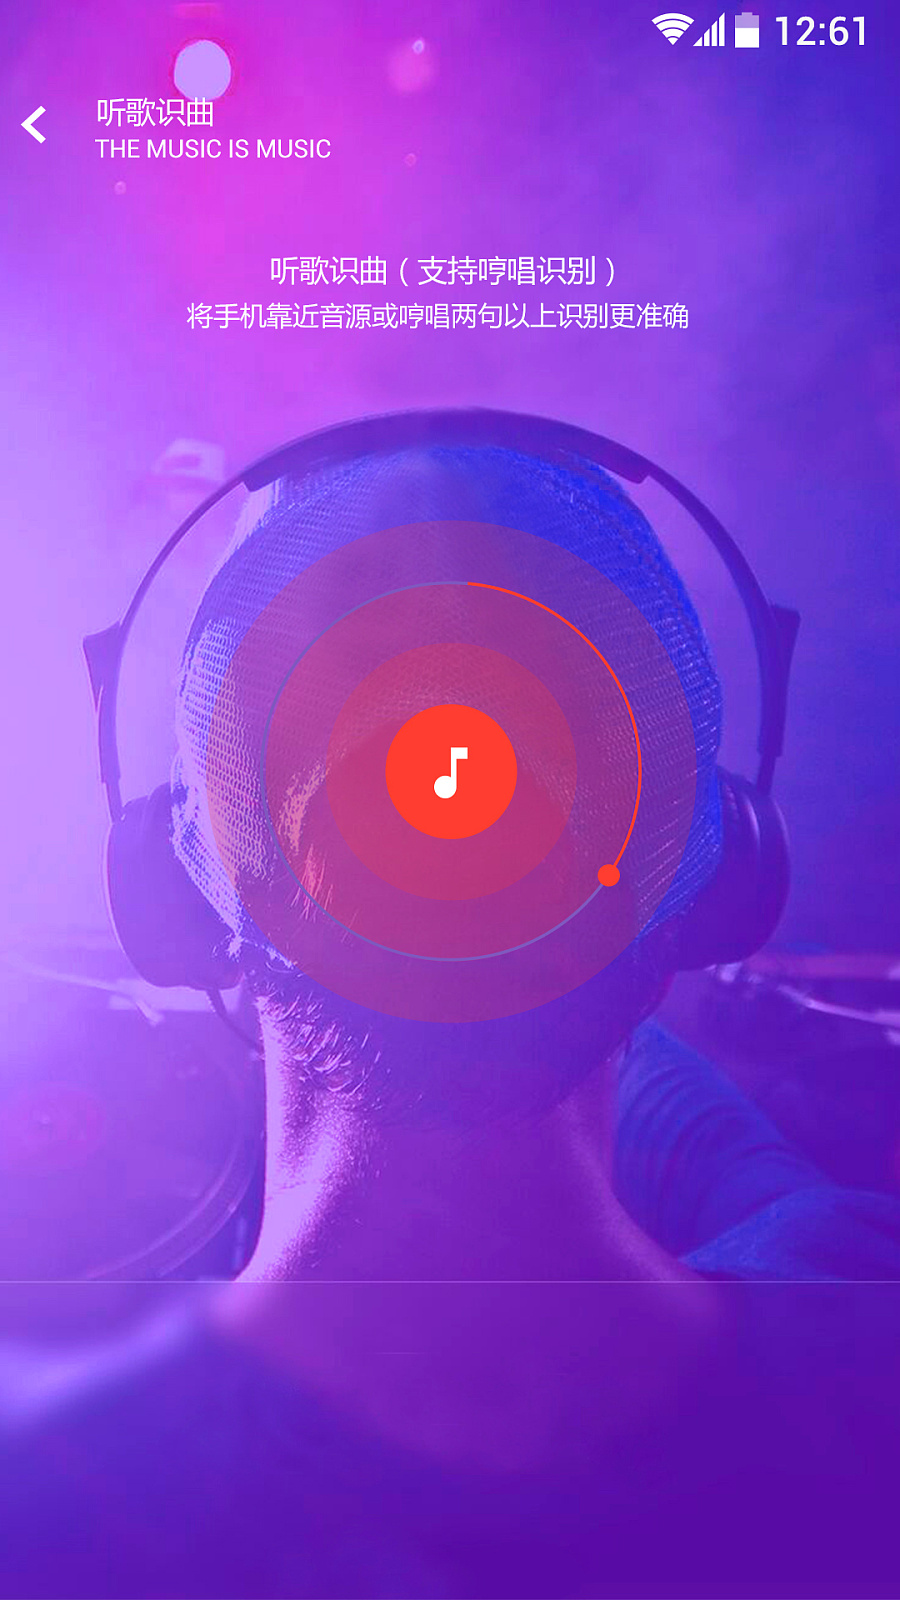 听歌新境界：酷我音乐10.3.6破解版带来的全新体验